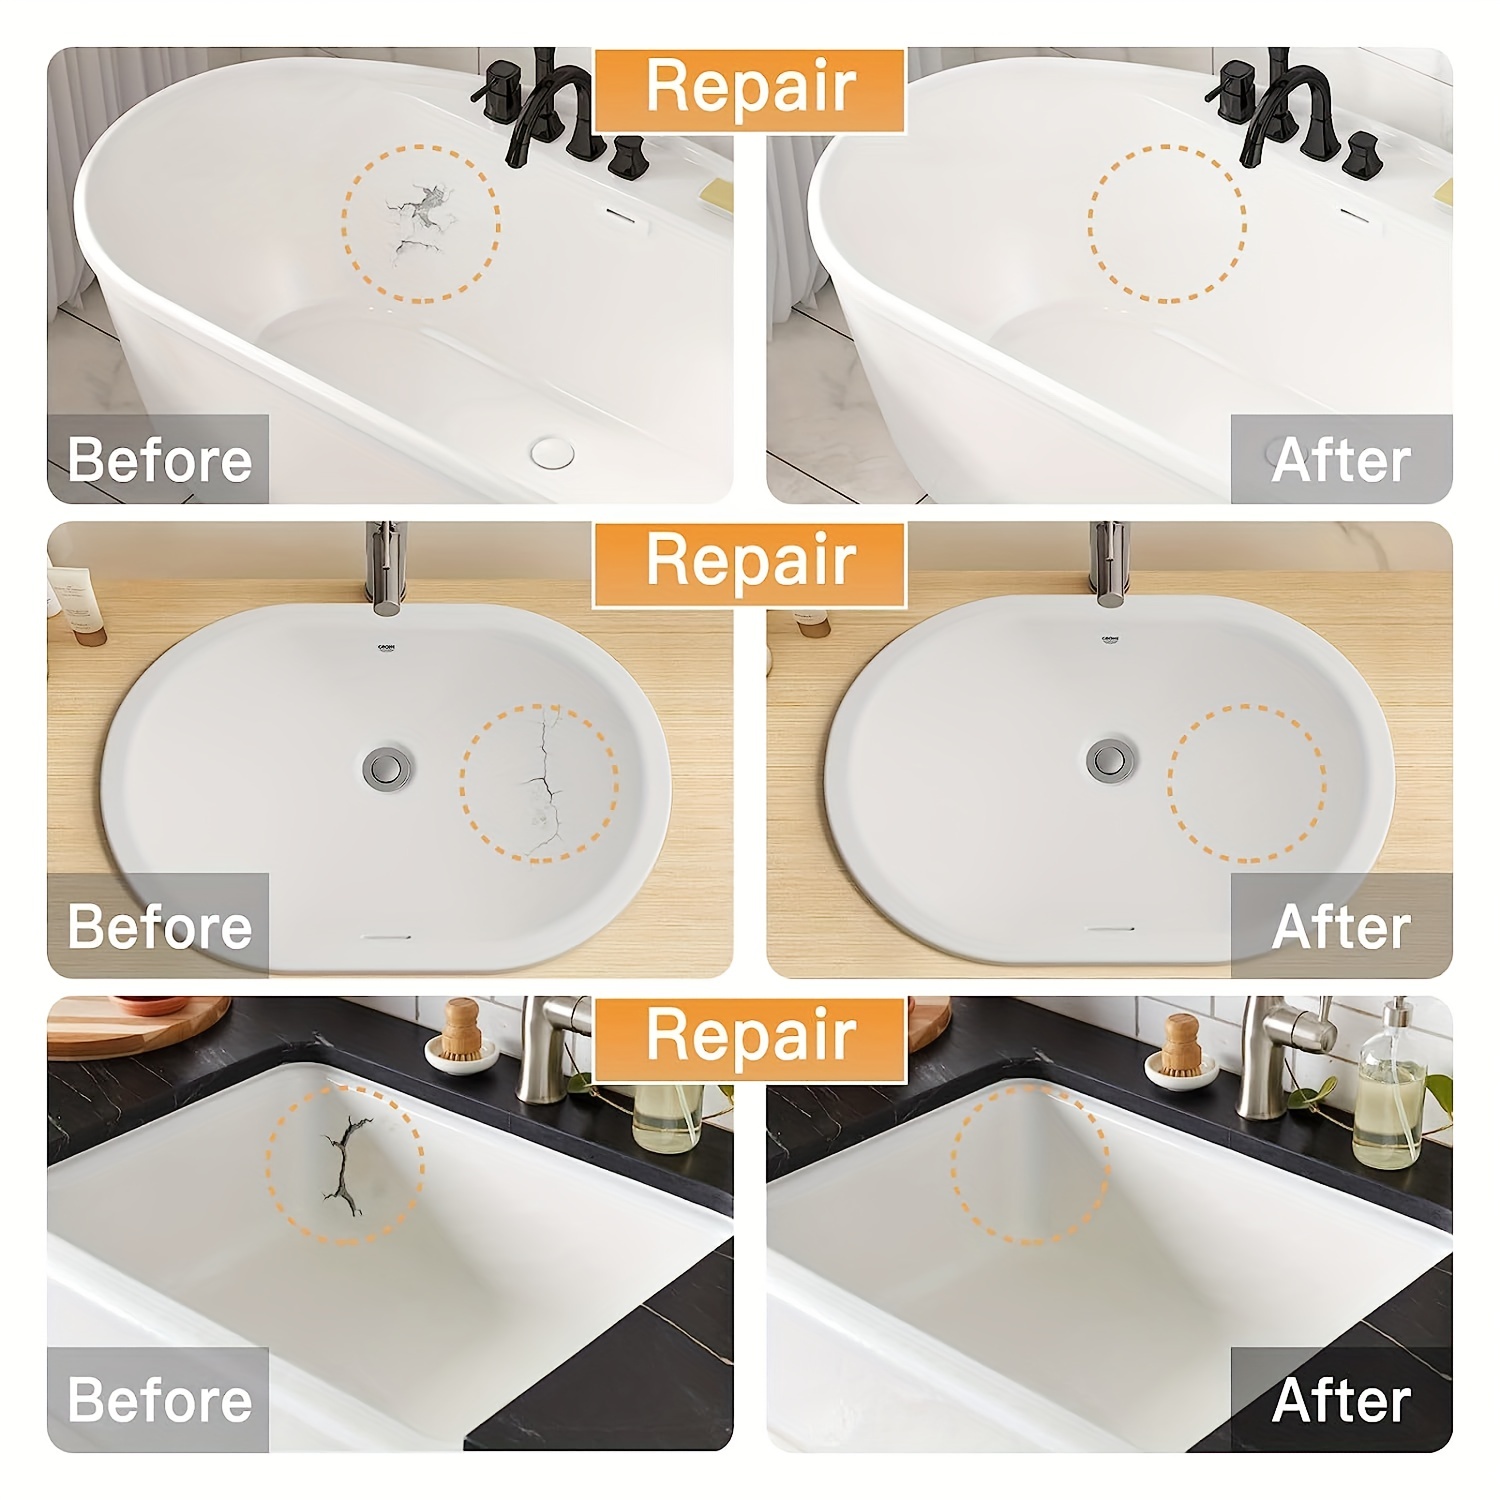 HOMETING Porcelain Repair Kit, Ceramic, Fiberglass, Tub, Shower